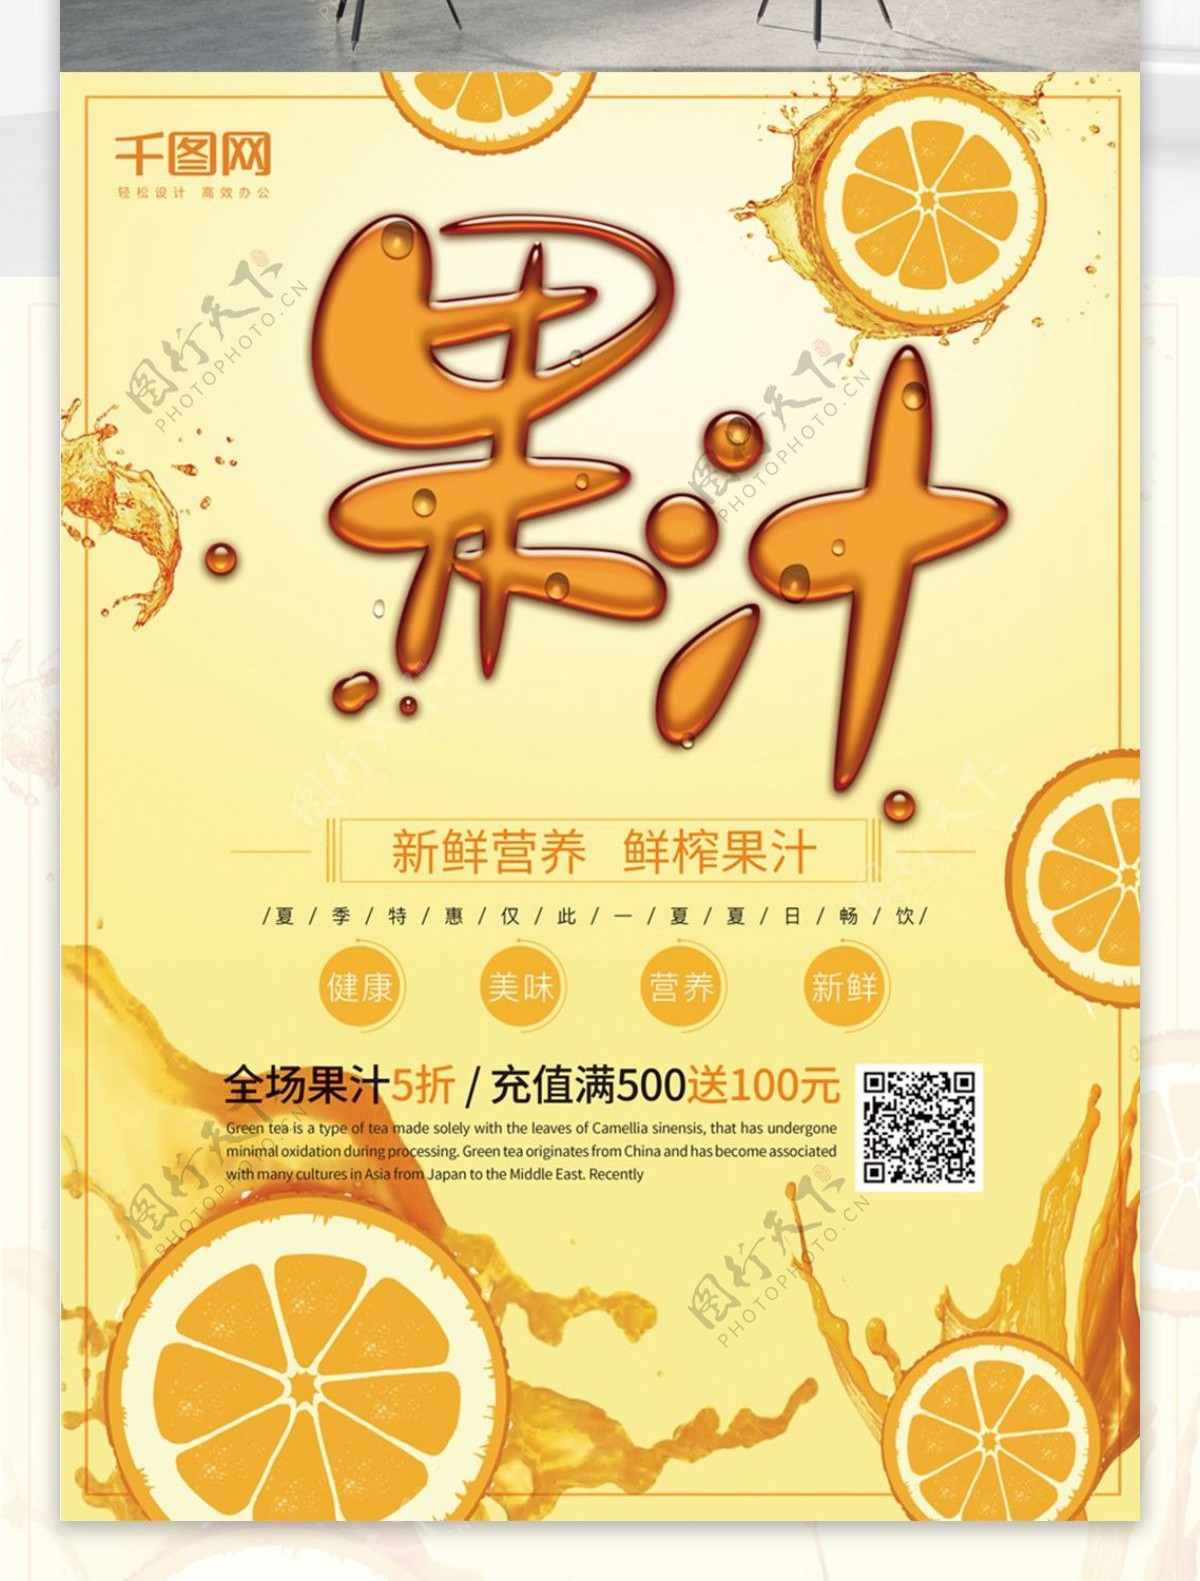 新鲜营养橙色饮料果汁海报